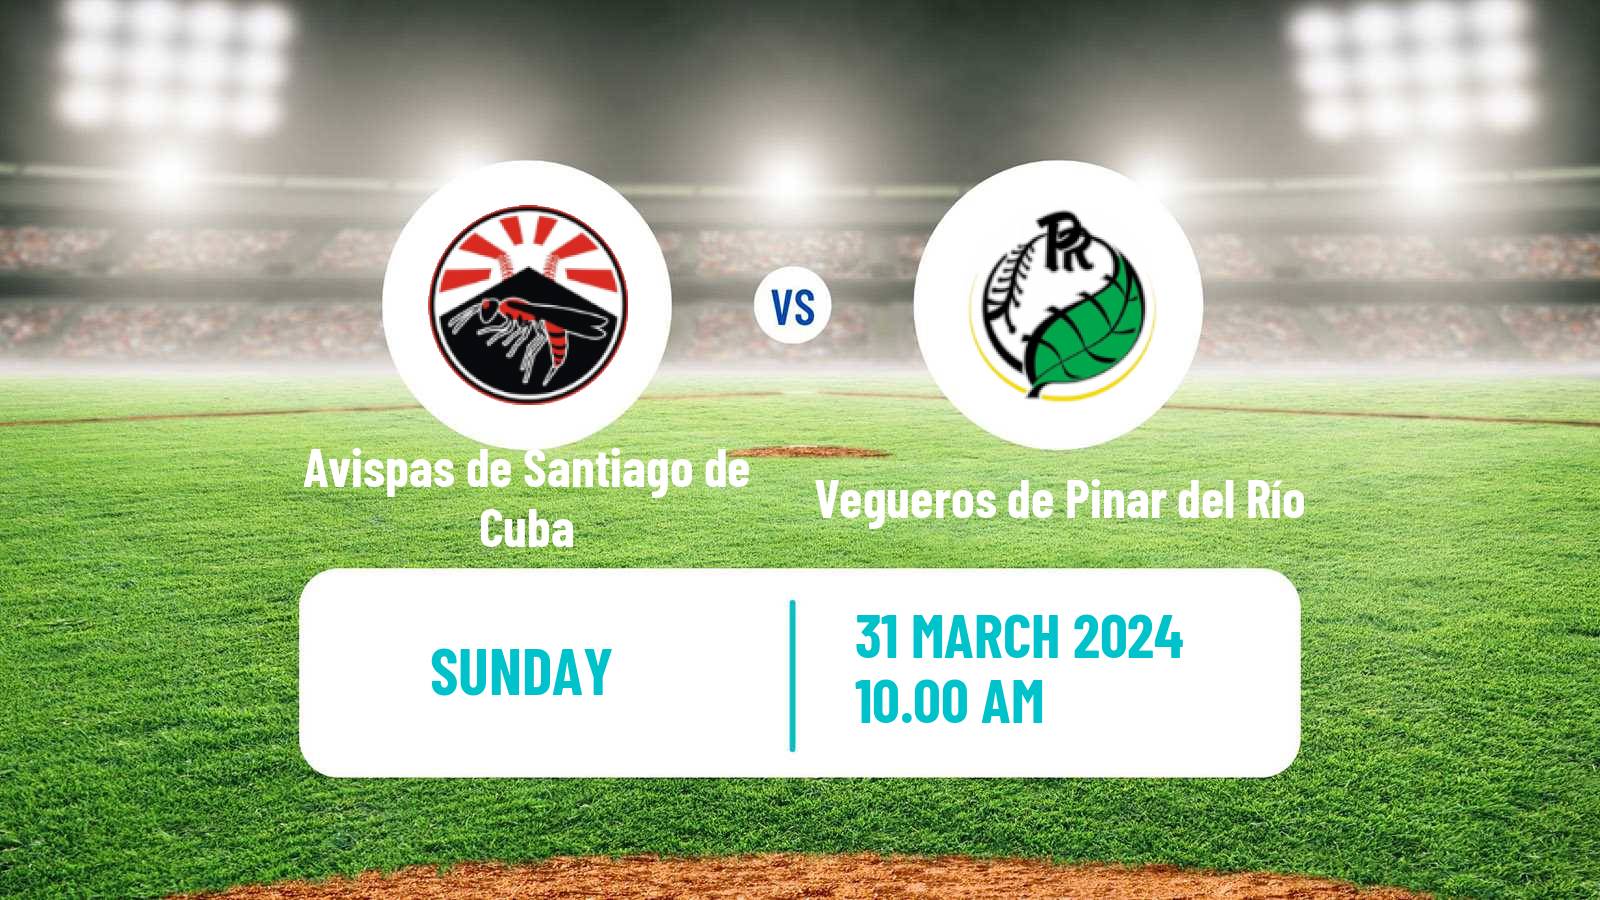 Baseball Cuba Serie Nacional Baseball Avispas de Santiago de Cuba - Vegueros de Pinar del Río